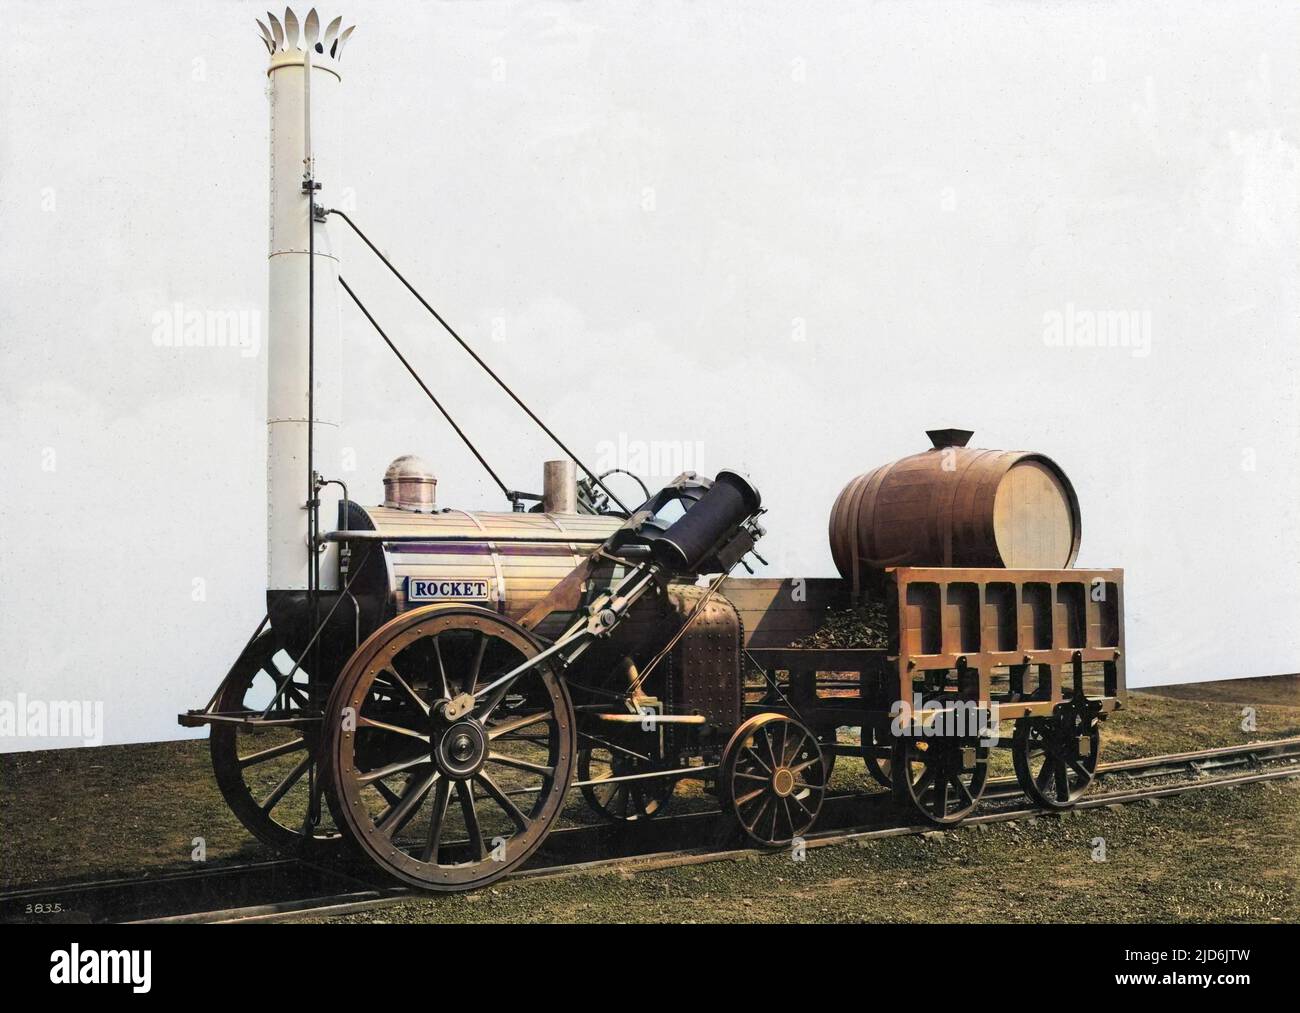 George Stephenson's Rocket - die Replik aus der Zeit vor 1923. George Stephensons Raketenlokomotive wurde 1829 gebaut. Gebaut für die Rainhill Trials der Liverpool & Manchester Railway. Die früheste Replik von Rocket in Originalgröße ist die auf diesem Foto. Kolorierte Version von: 10804102 Datum: Ca. 1920 Stockfoto